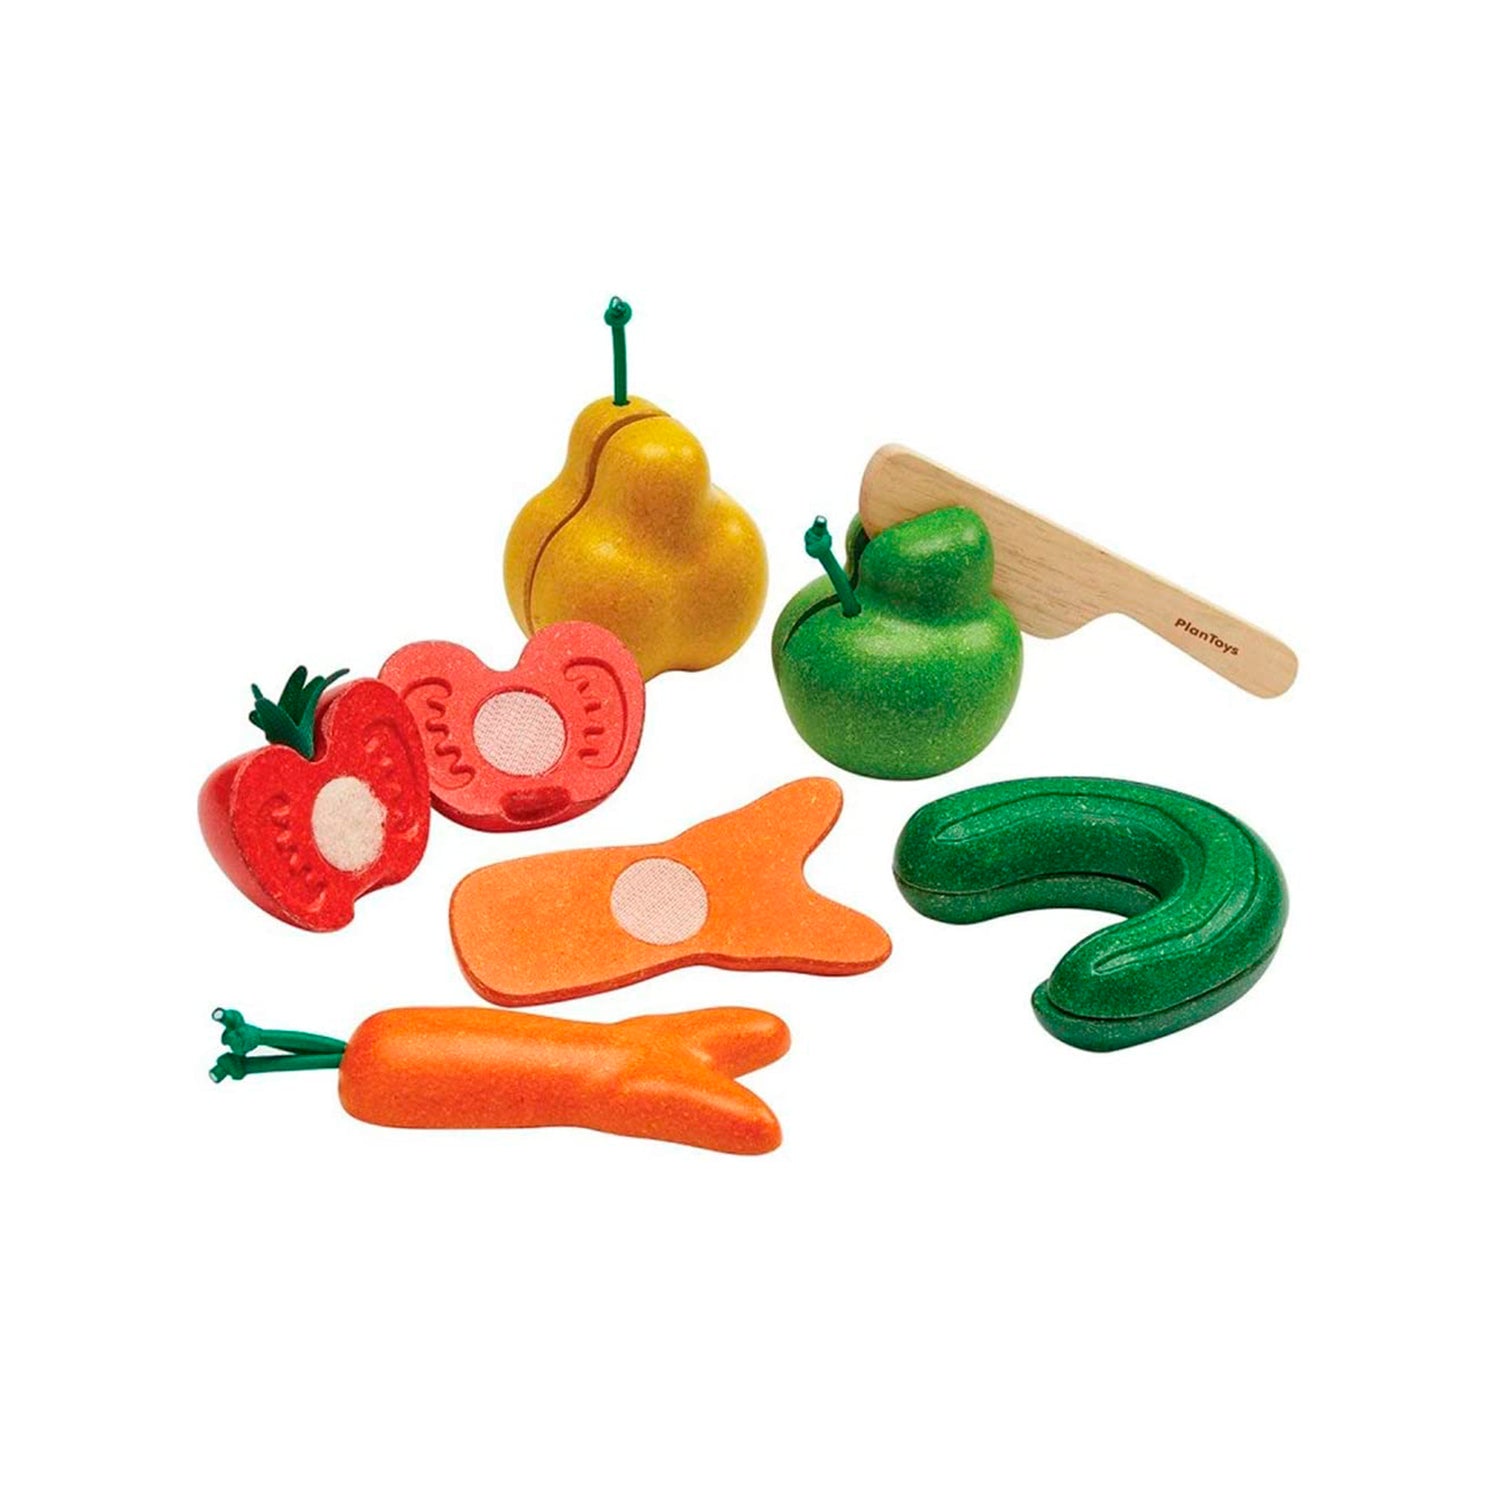 Plantoys. Frutas y verduras imperfectas